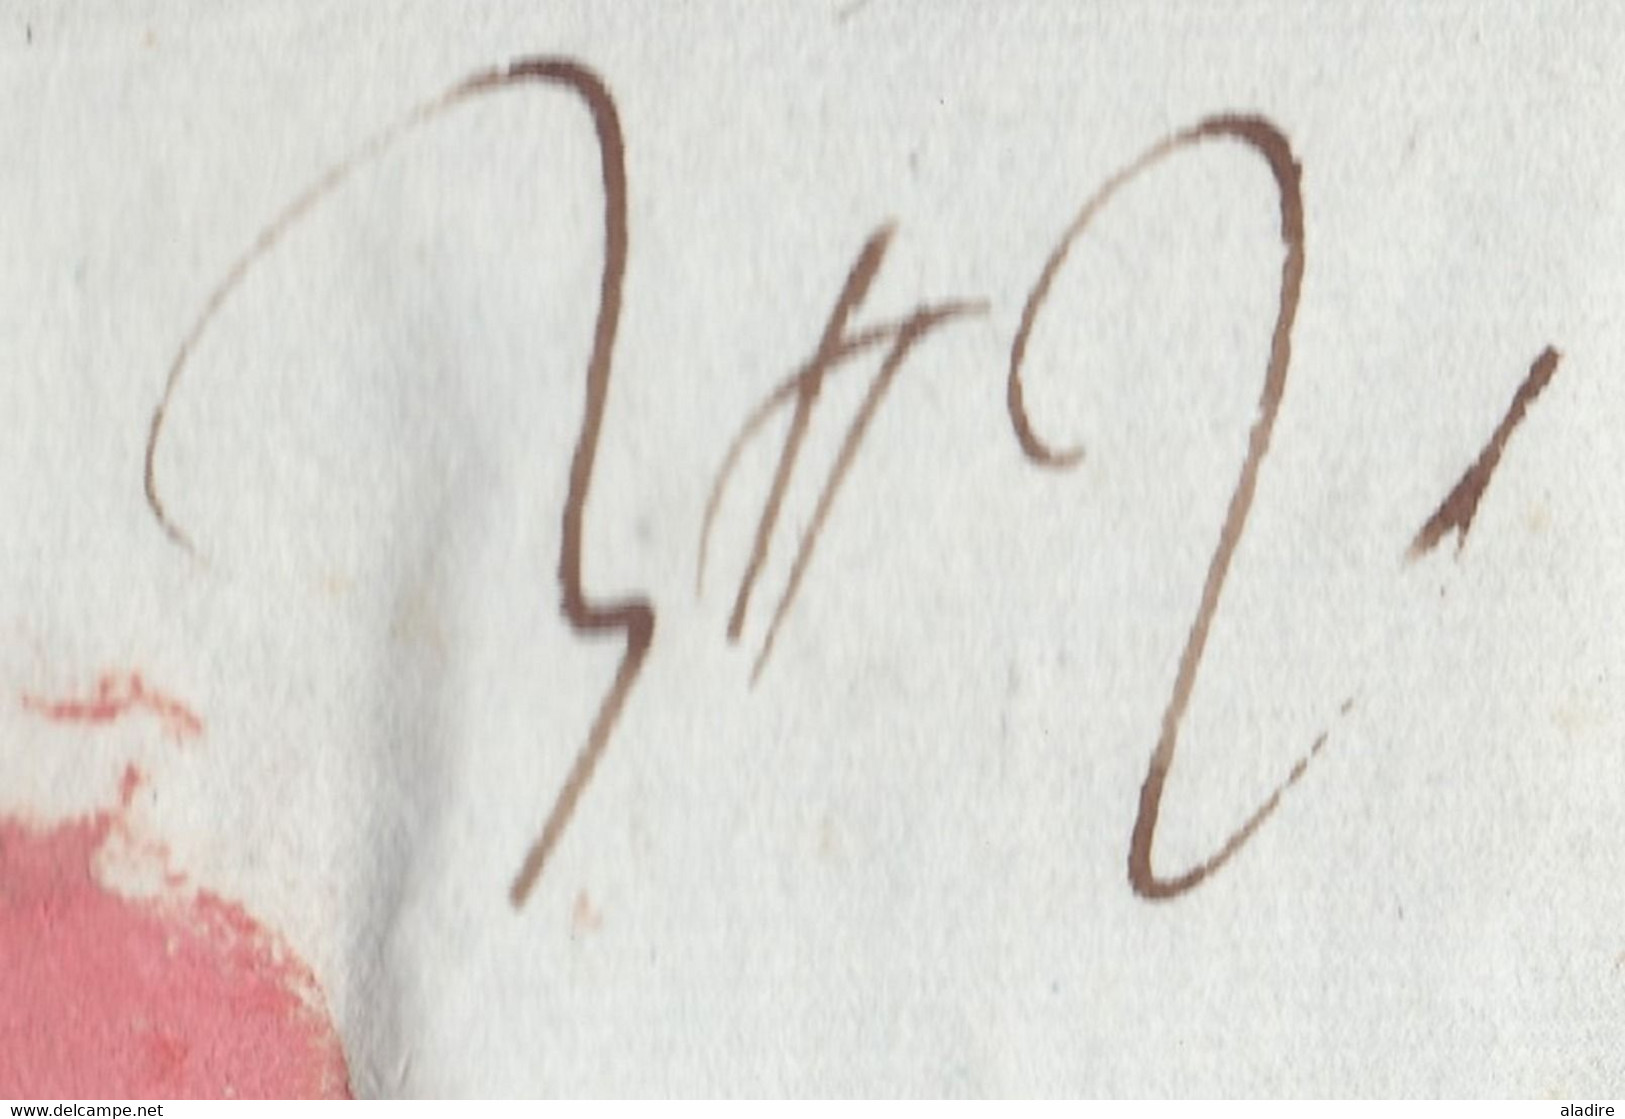 1811 - Marque postale 99 GENEVE, département conquis, sur lettre pliée vers Lyon, France - taxe 4